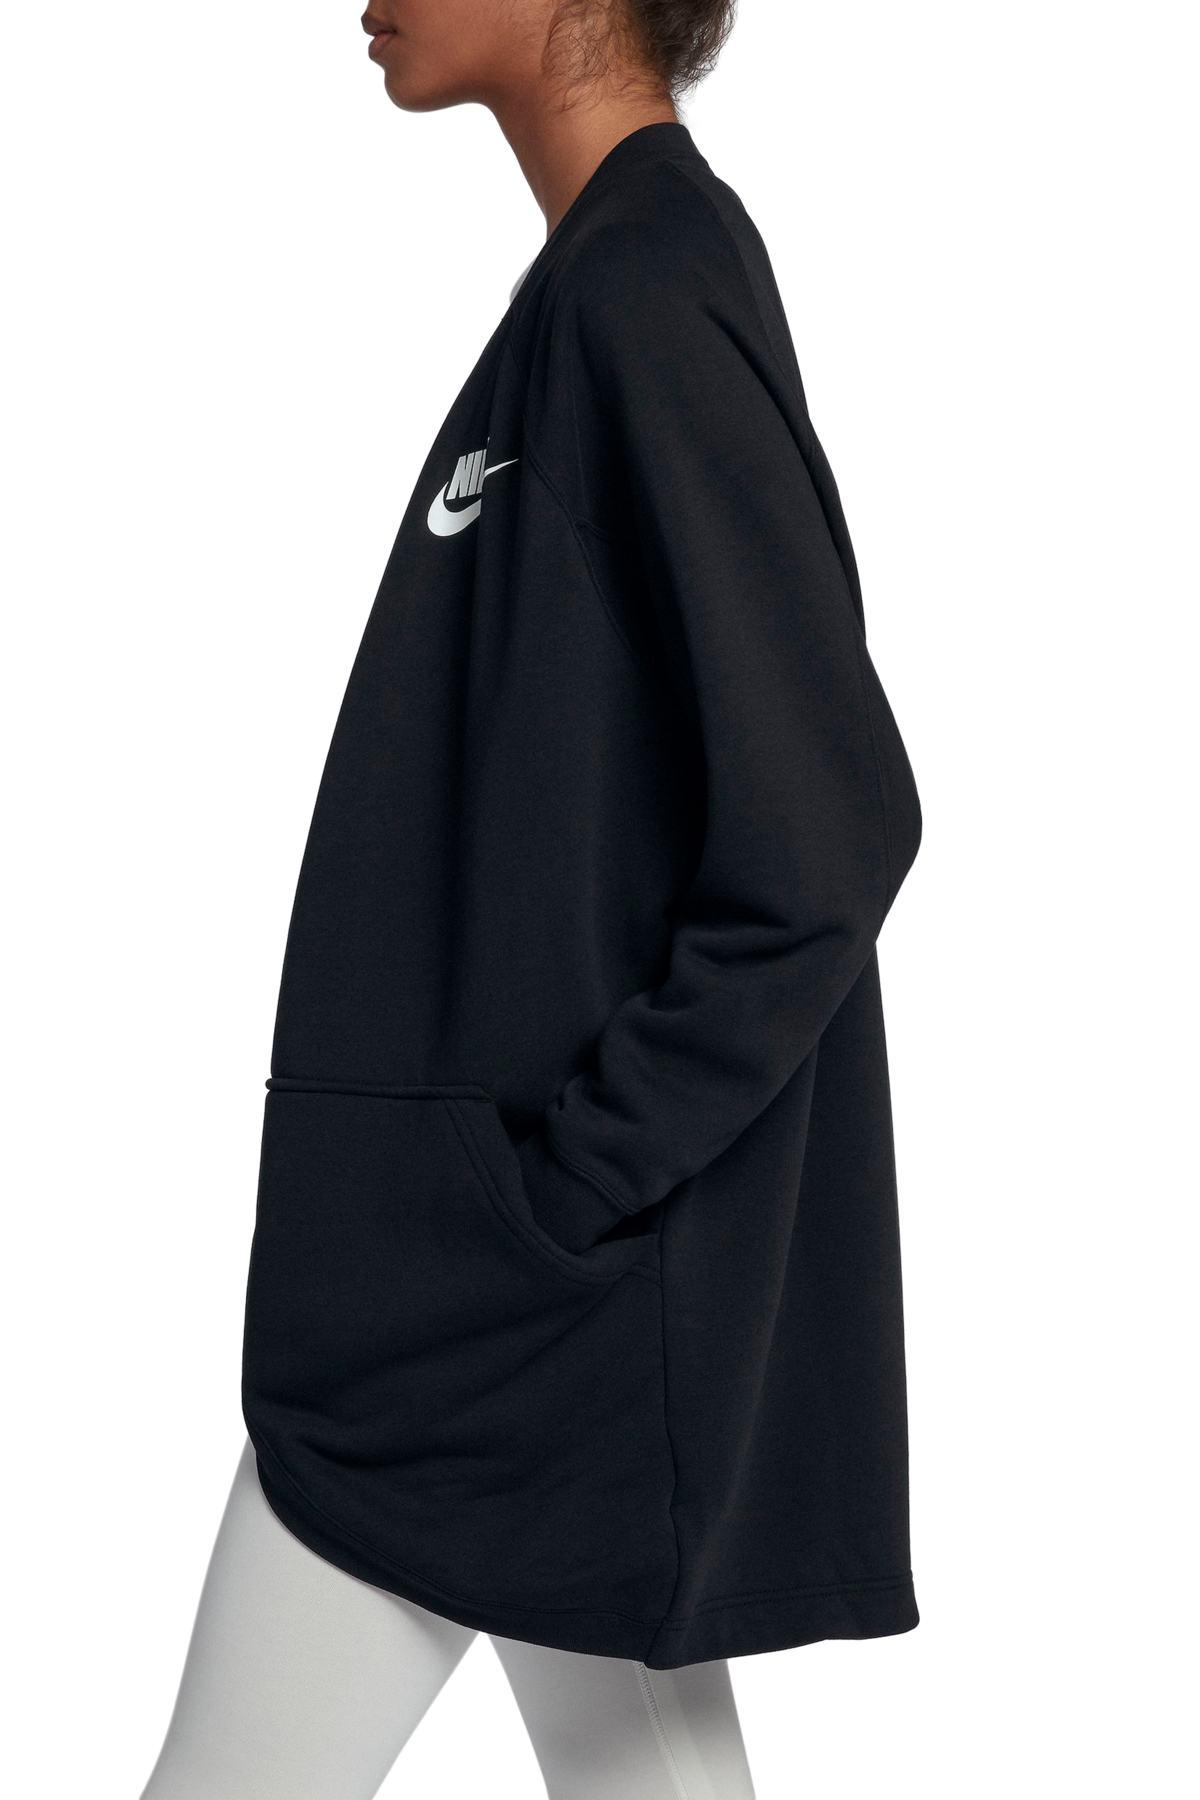 Nike Sportswear Rally Relaxed Fleece Cardigan in Black